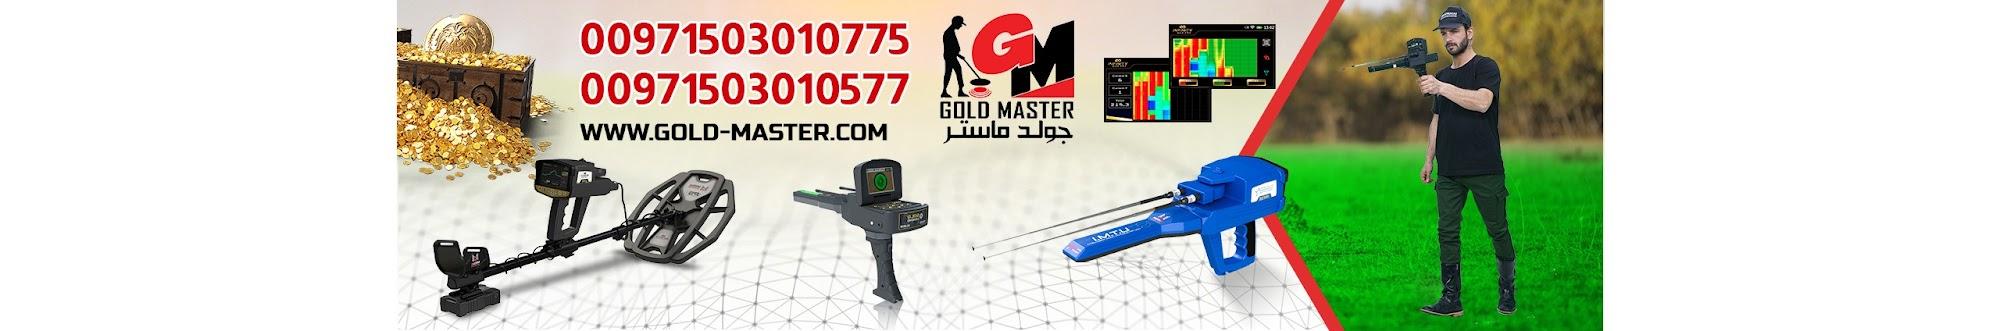 اجهزة كشف الذهب جولد ماستر | Gold Master Detectors